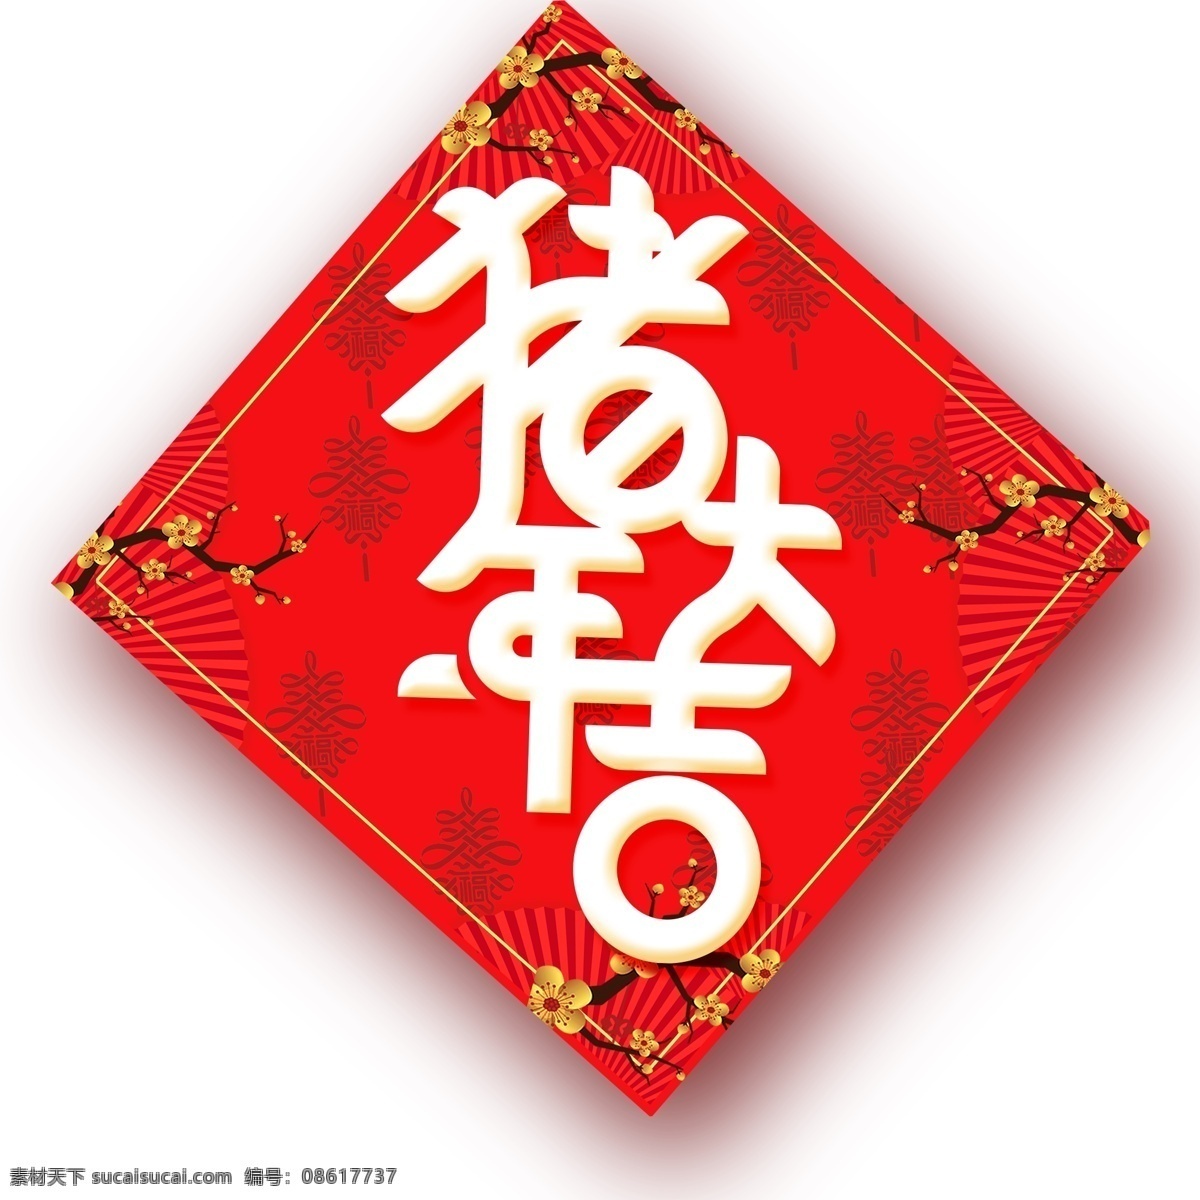 红色 中 国风 猪年 大吉 字体 元素 喜庆 传统 中国风 设计元素 简约 猪年大吉 新年字体 猪年元素 手绘图案 元素装饰 装饰图案 创意元素 手绘元素 psd元素